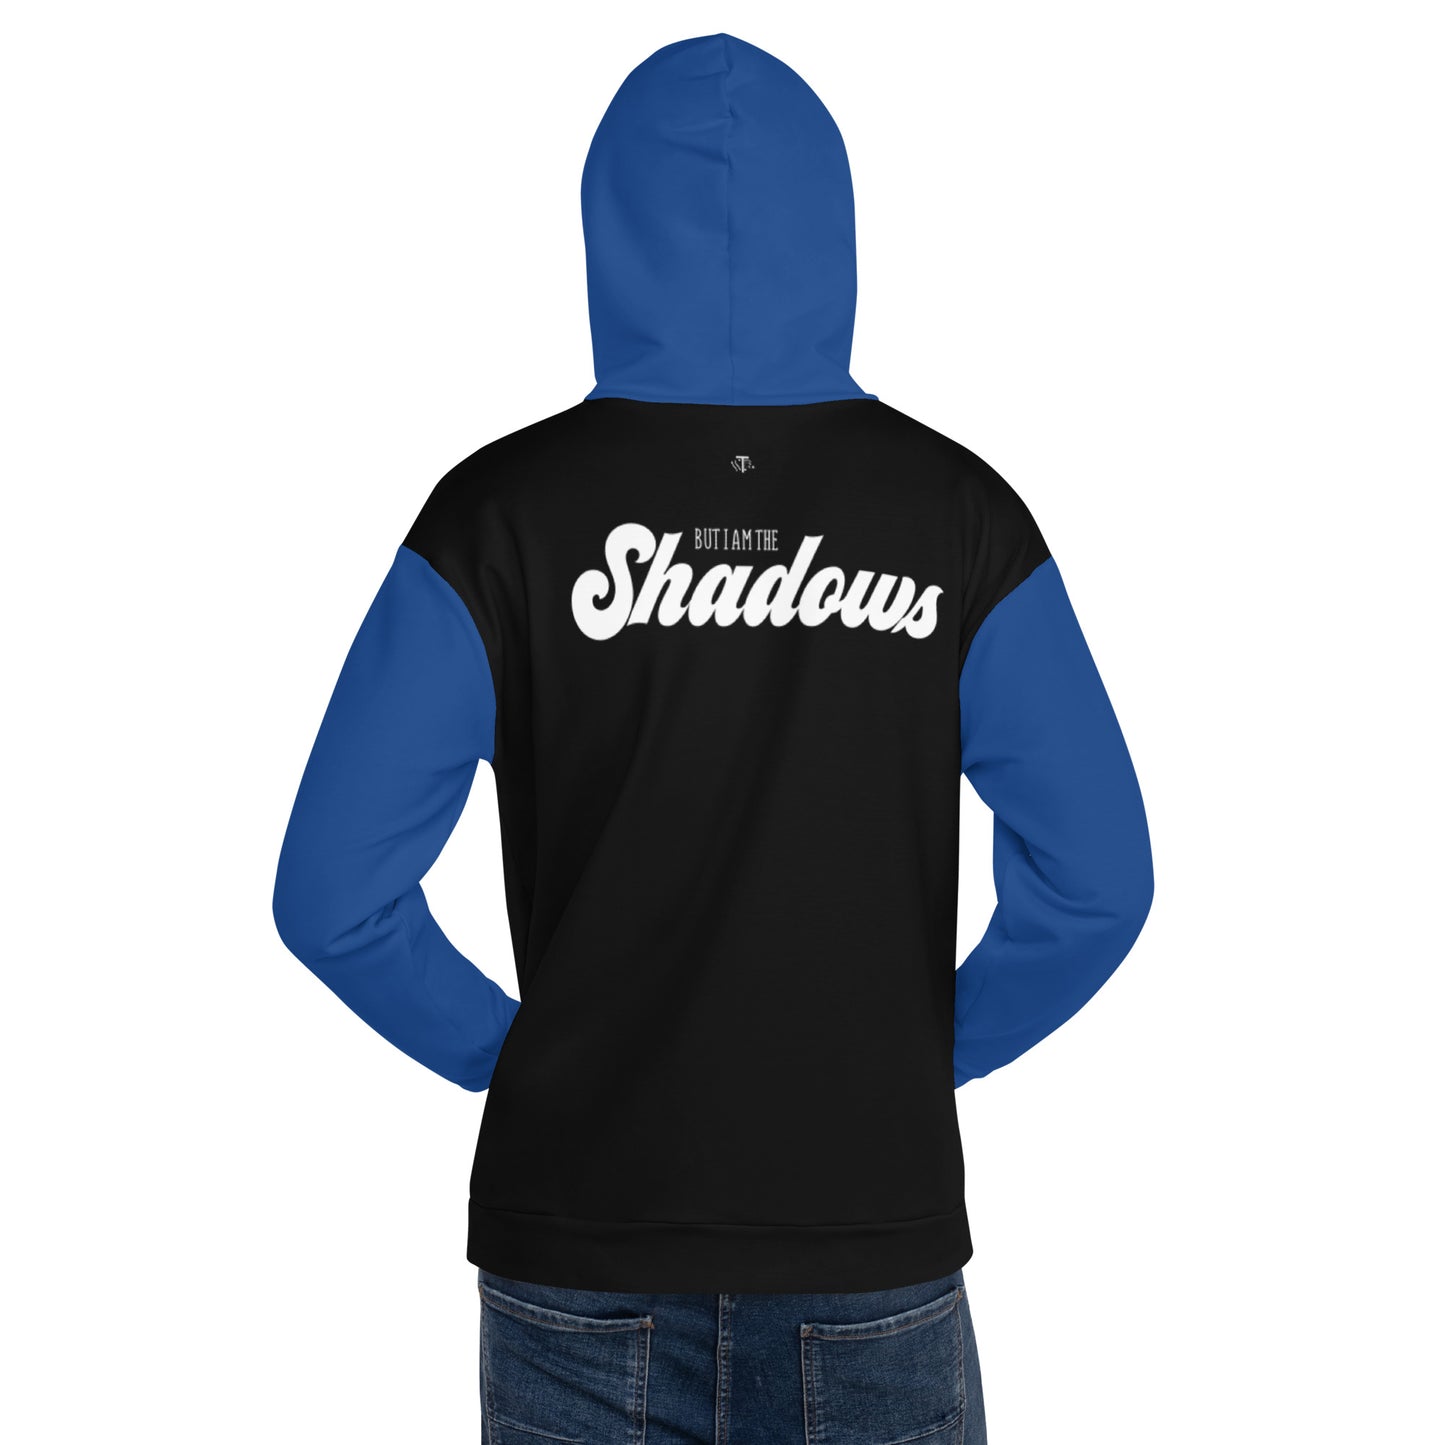 In The Shadows Unisex Hoodie